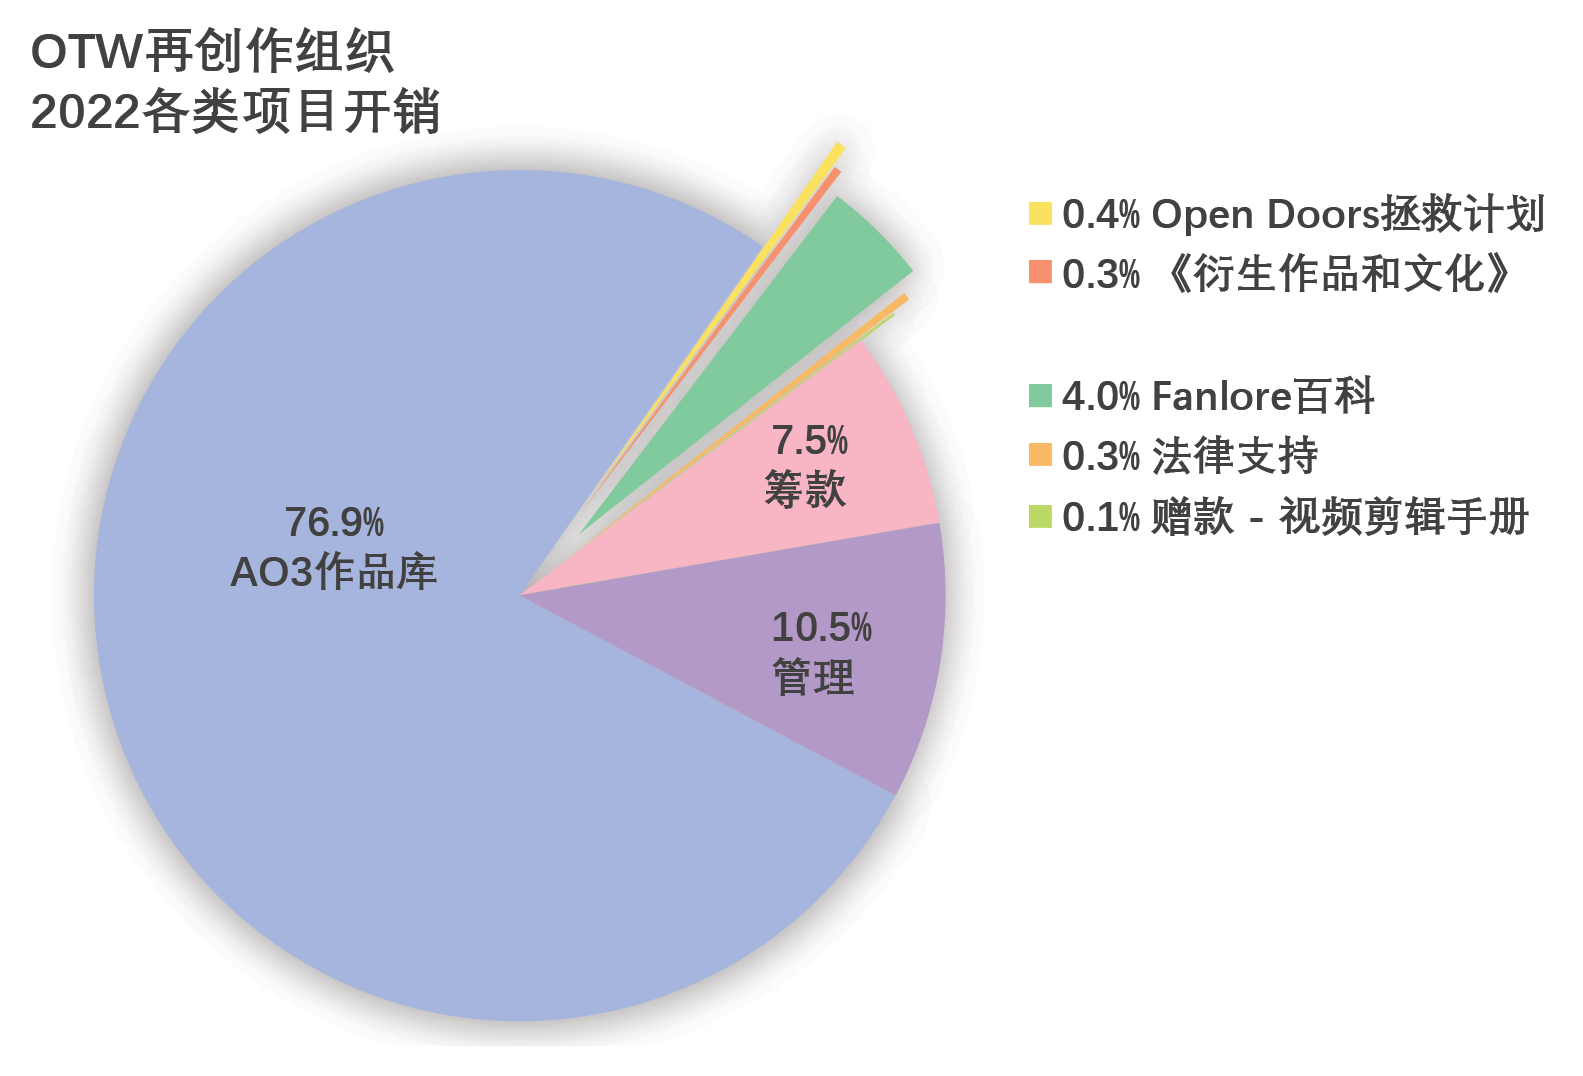 各类项目开销：AO3作品库：76.9%；Open Doors拯救计划：0.4%；《衍生作品和文化》：0.3%；Fanlore百科：4.0%；法律支持：0.3%；赠款-视频剪辑手册：0.1%；管理：10.5%；筹款：7.5%。